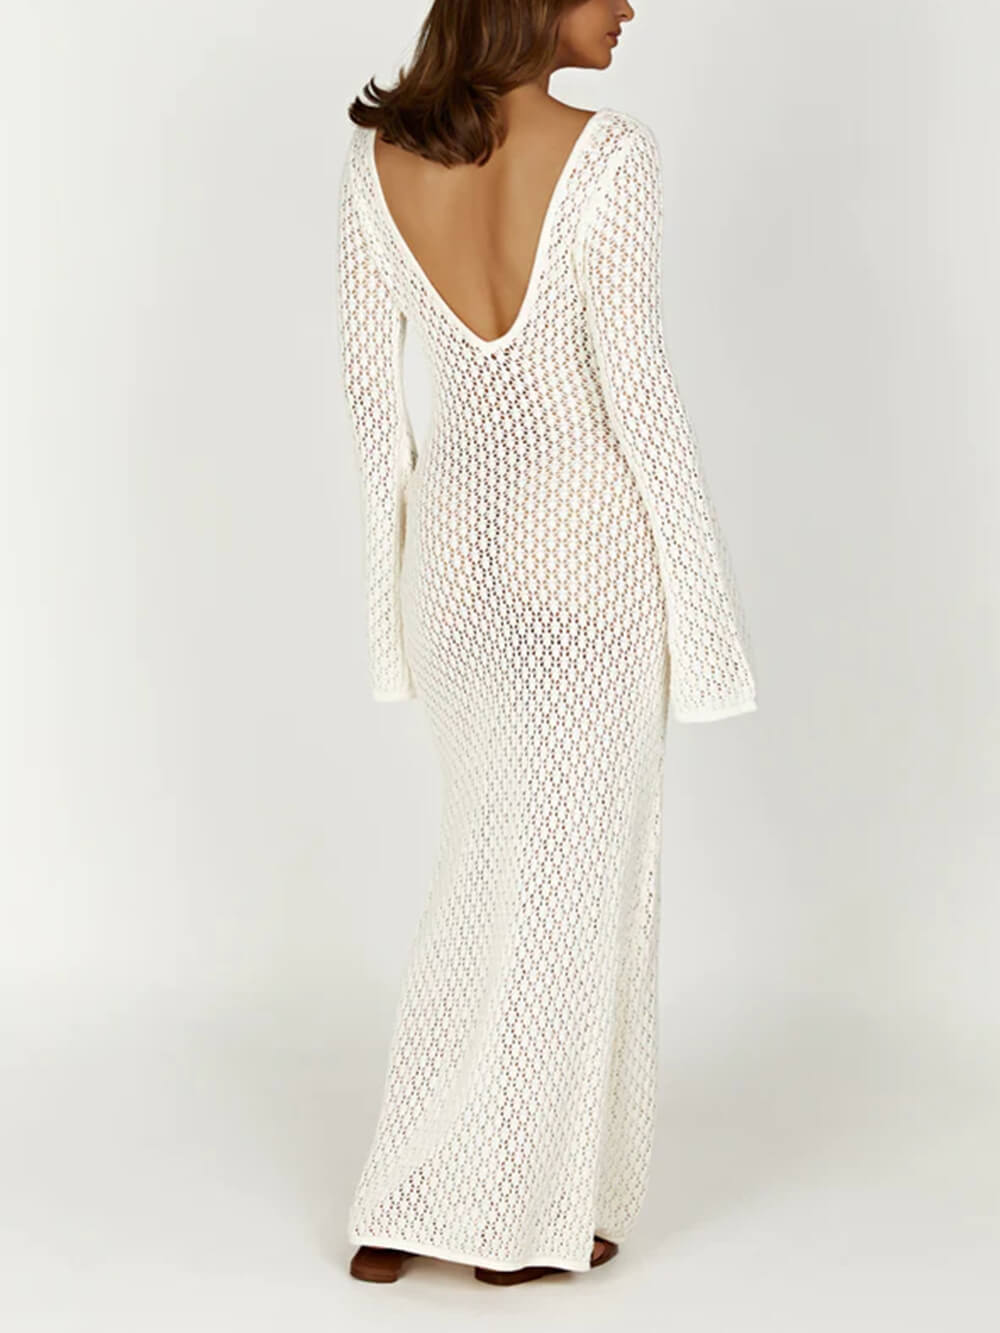 Szydełkowa sukienka maxi z rozszerzanymi rękawami w kształcie rybiego ogona